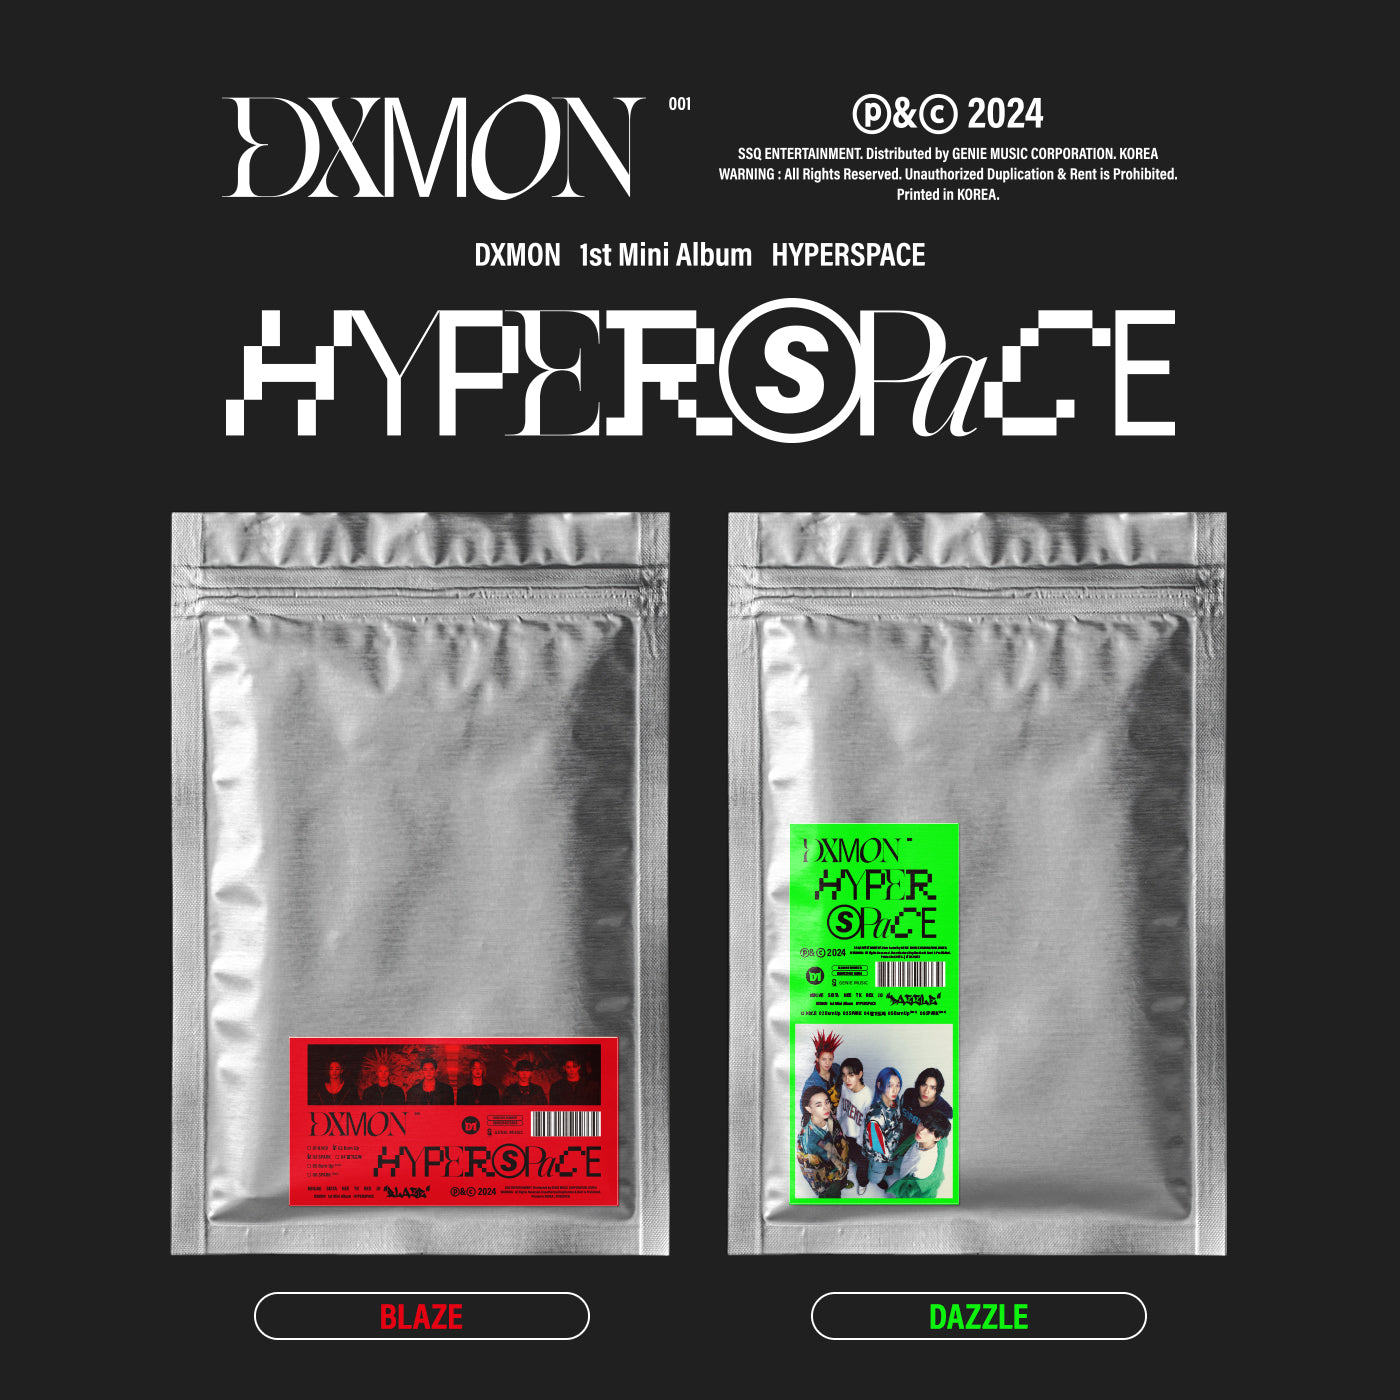 DXMON 1ST MINI ALBUM 'HYPERSPACE' SET COVER